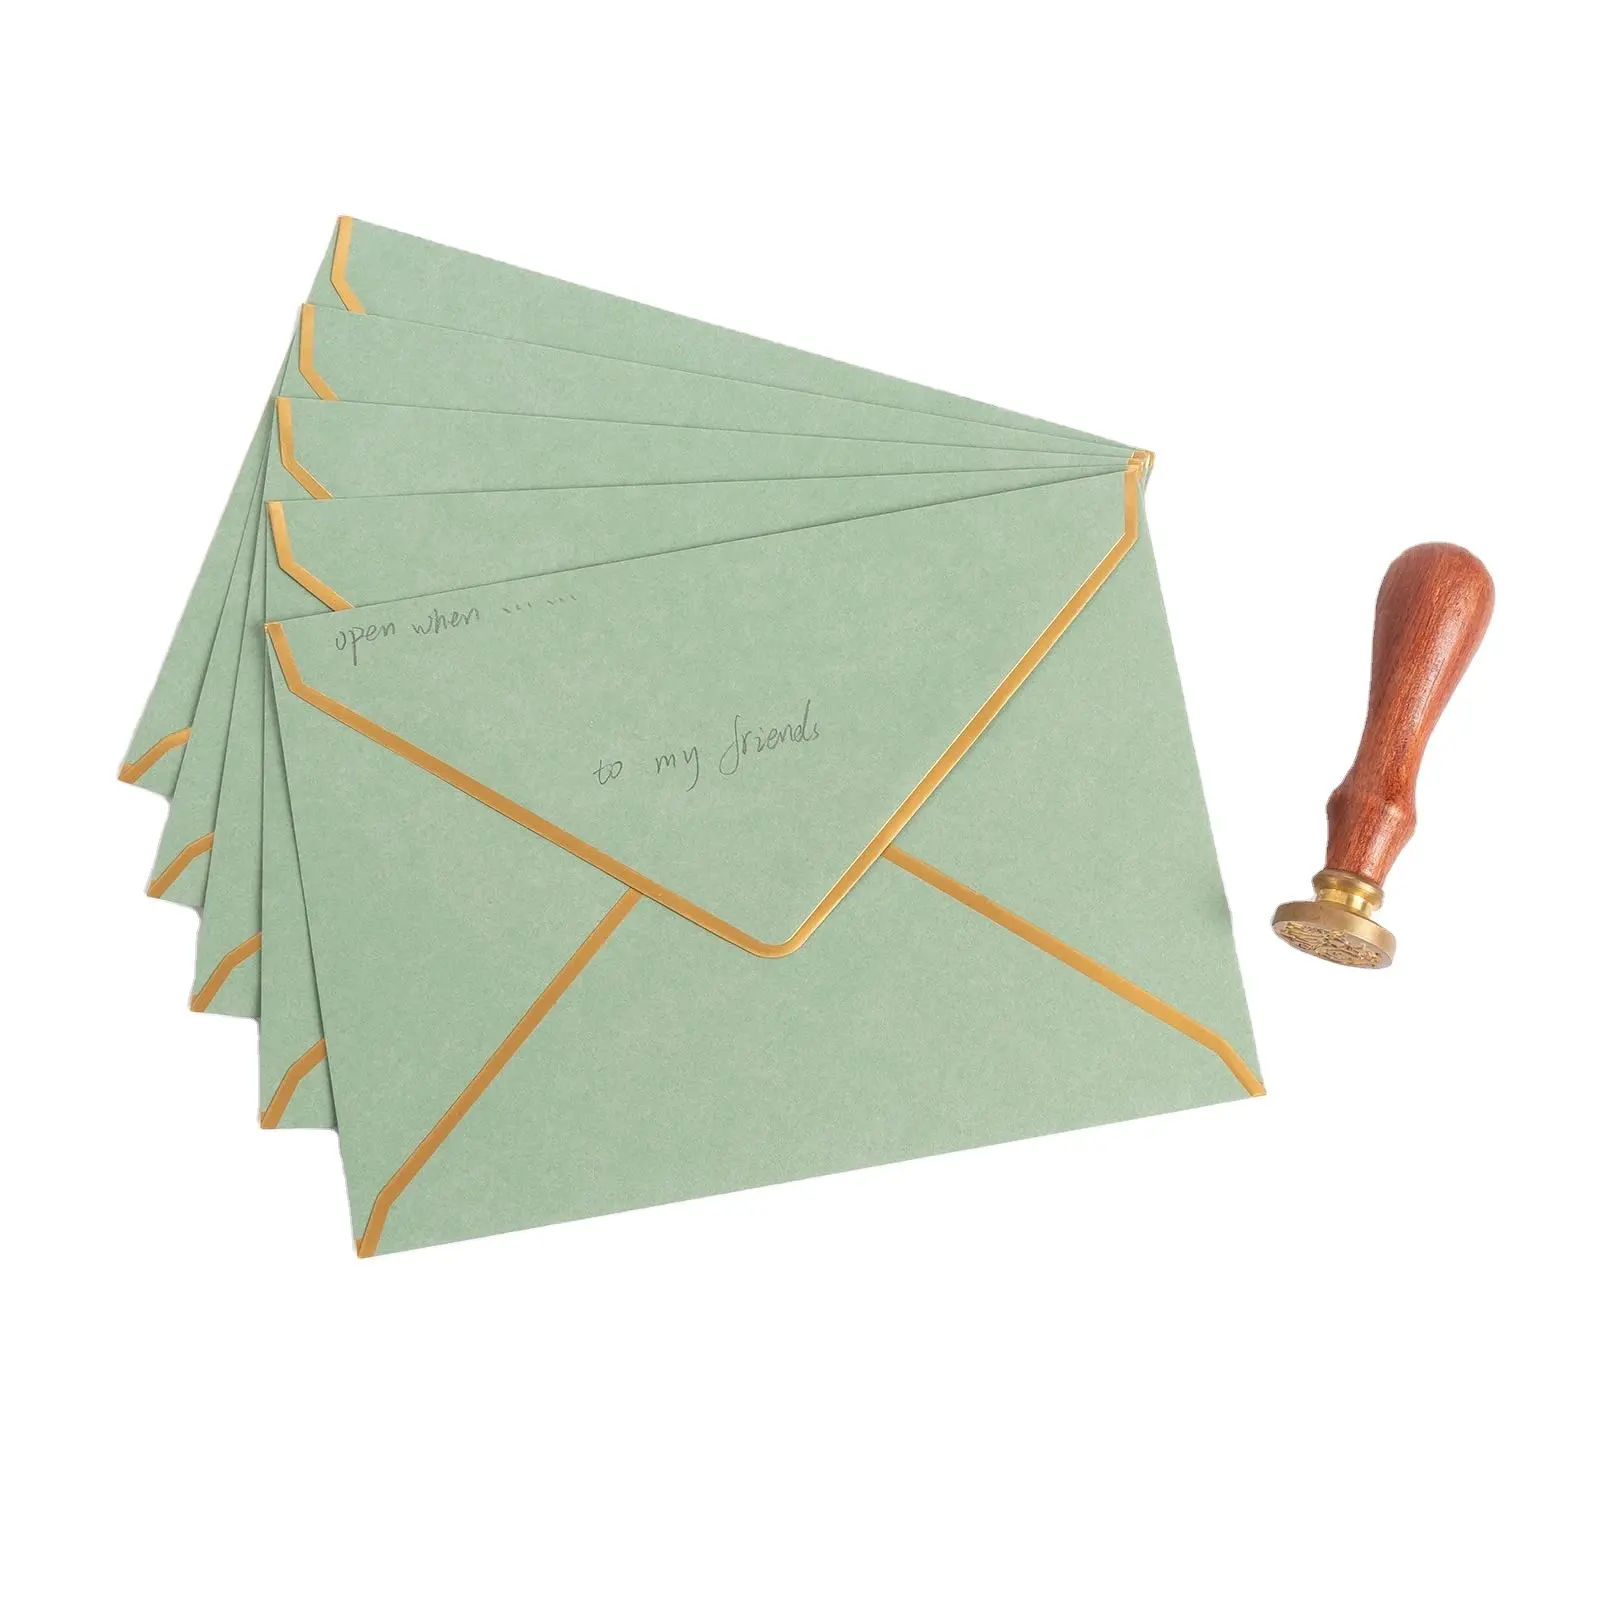 Enveloppes de cartes de remerciement personnalisées de 5x7 pouces enveloppe de papier fantaisie vert clair pour cartes-cadeaux bon marché